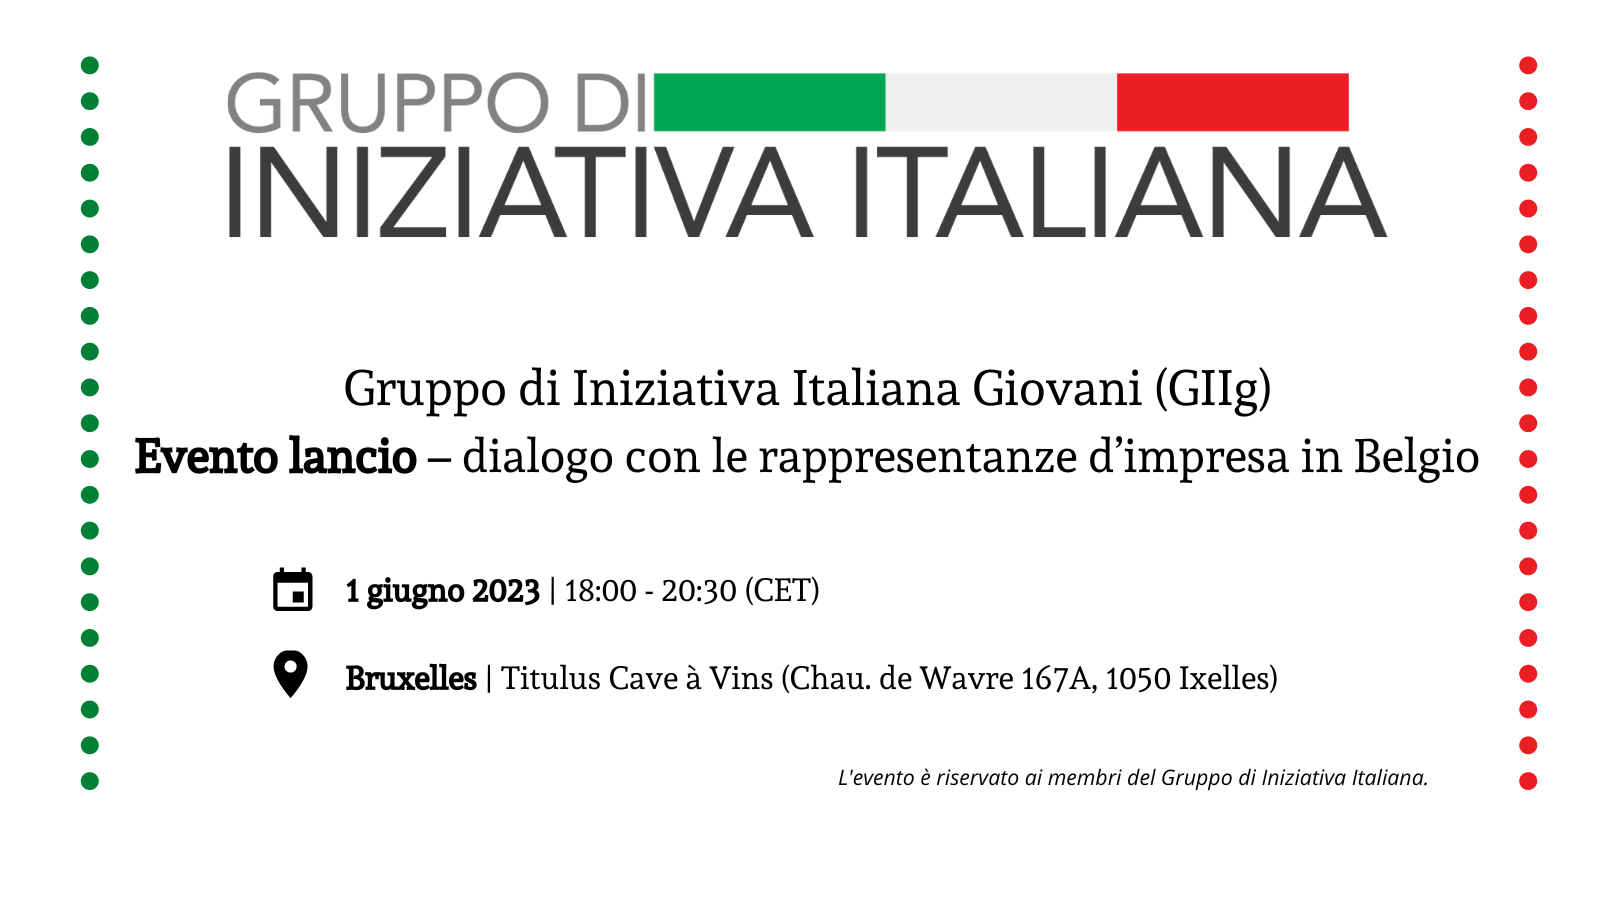 Gruppo di Iniziativa Italiana Giovani (GIIg): Kick-off event – dialogue with business representatives in Belgium